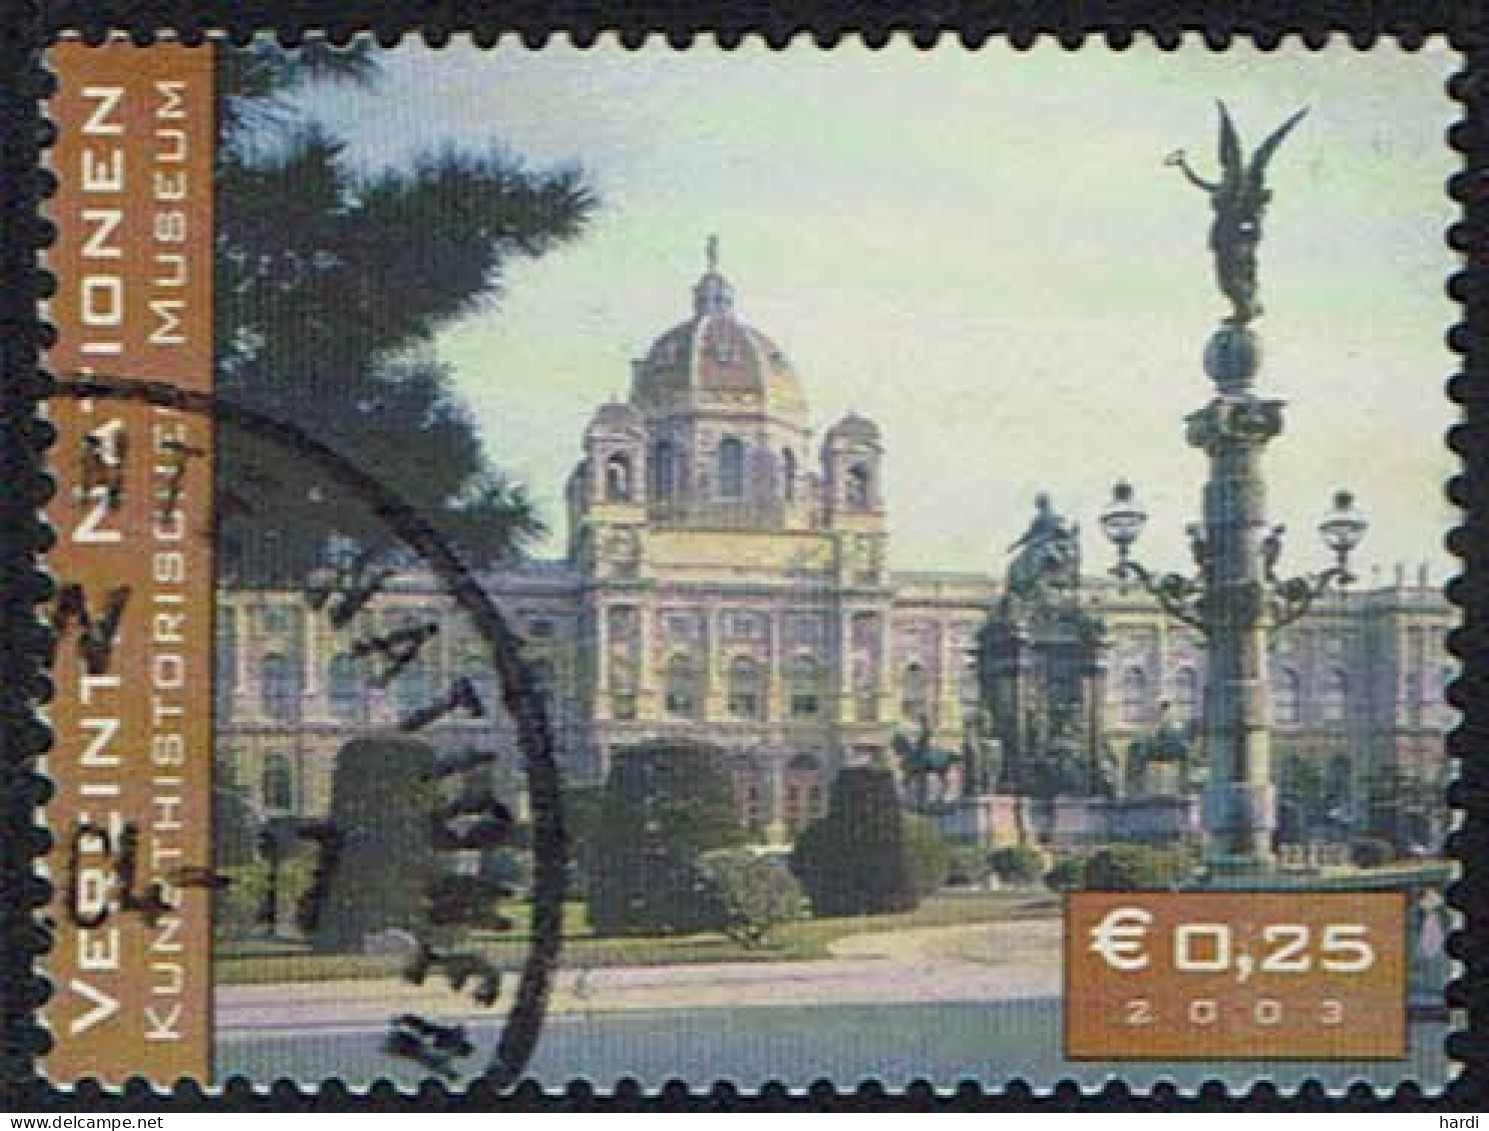 Vereinte Nationen Wien 2003, MiNr 387, Gestempelt - Used Stamps